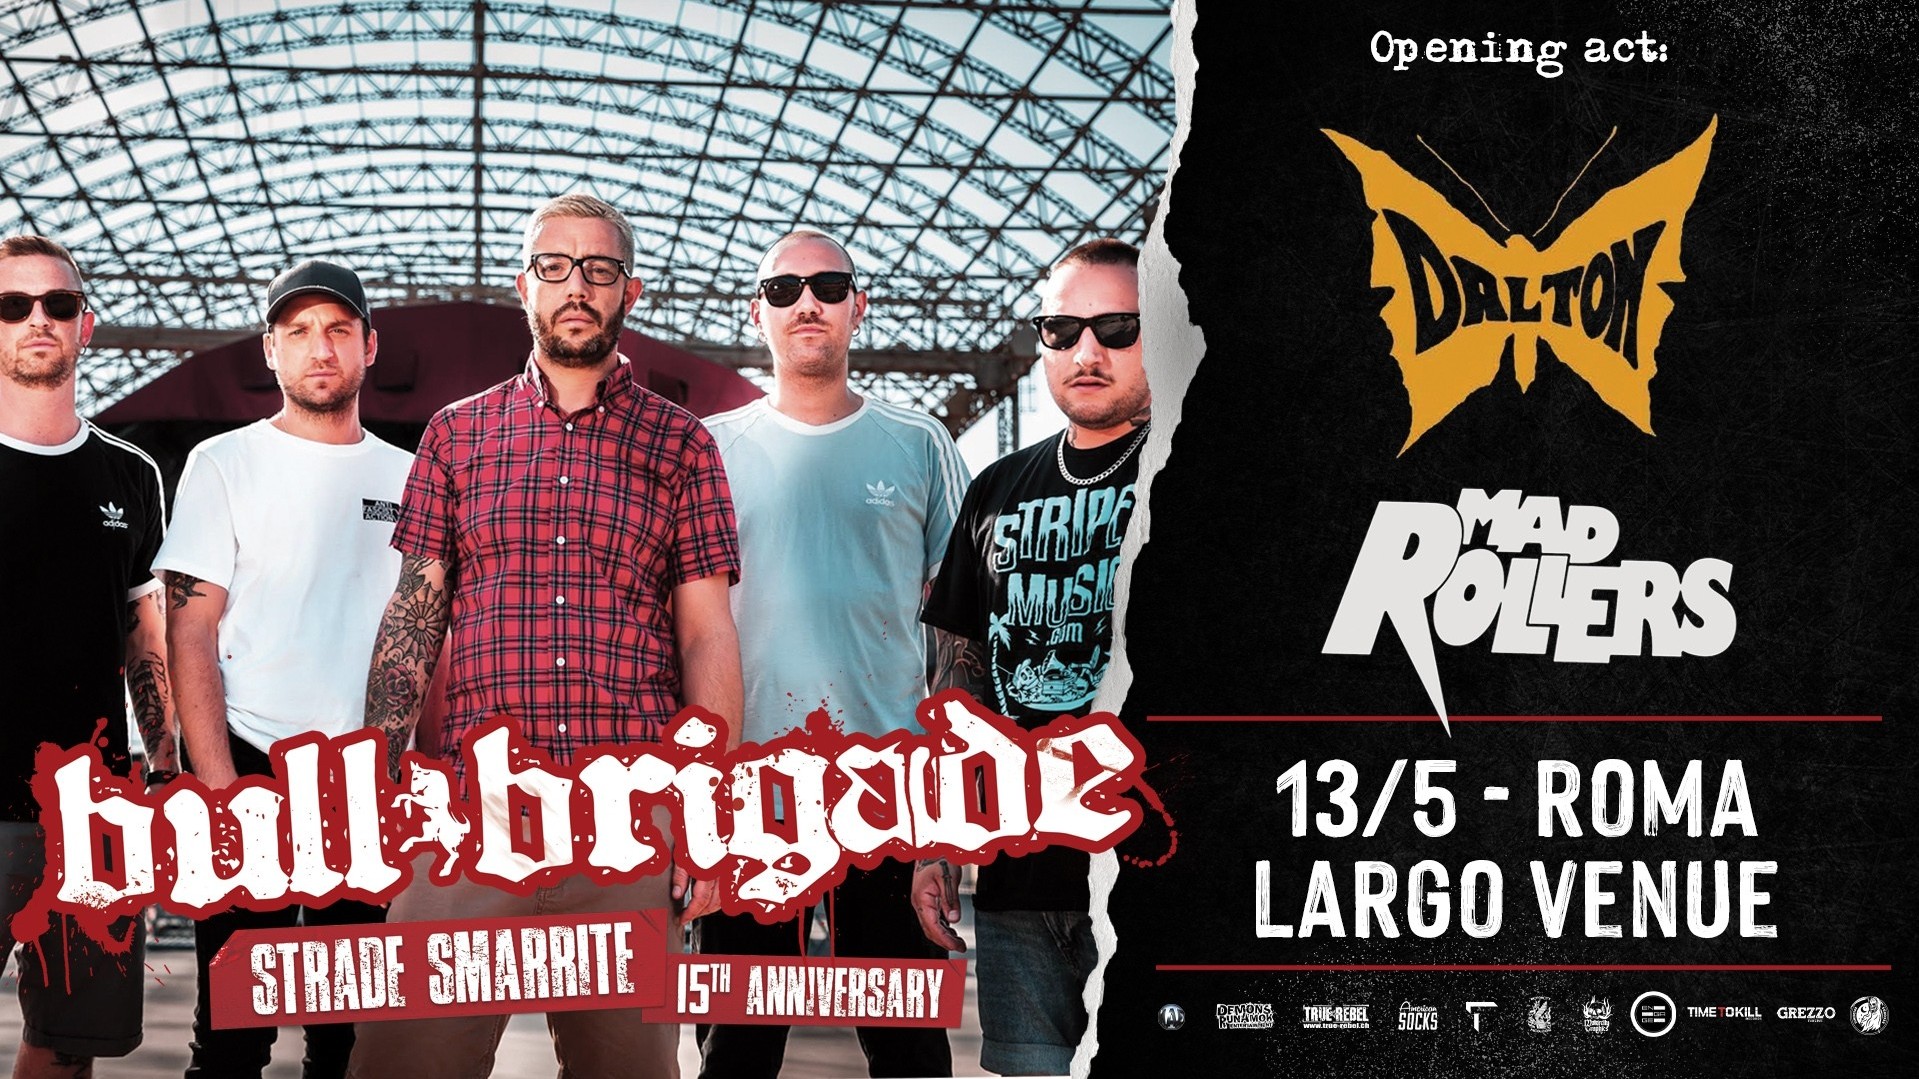 Bull Brigade "Strade Smarrite" Tour + Dalton + Mad Rollers